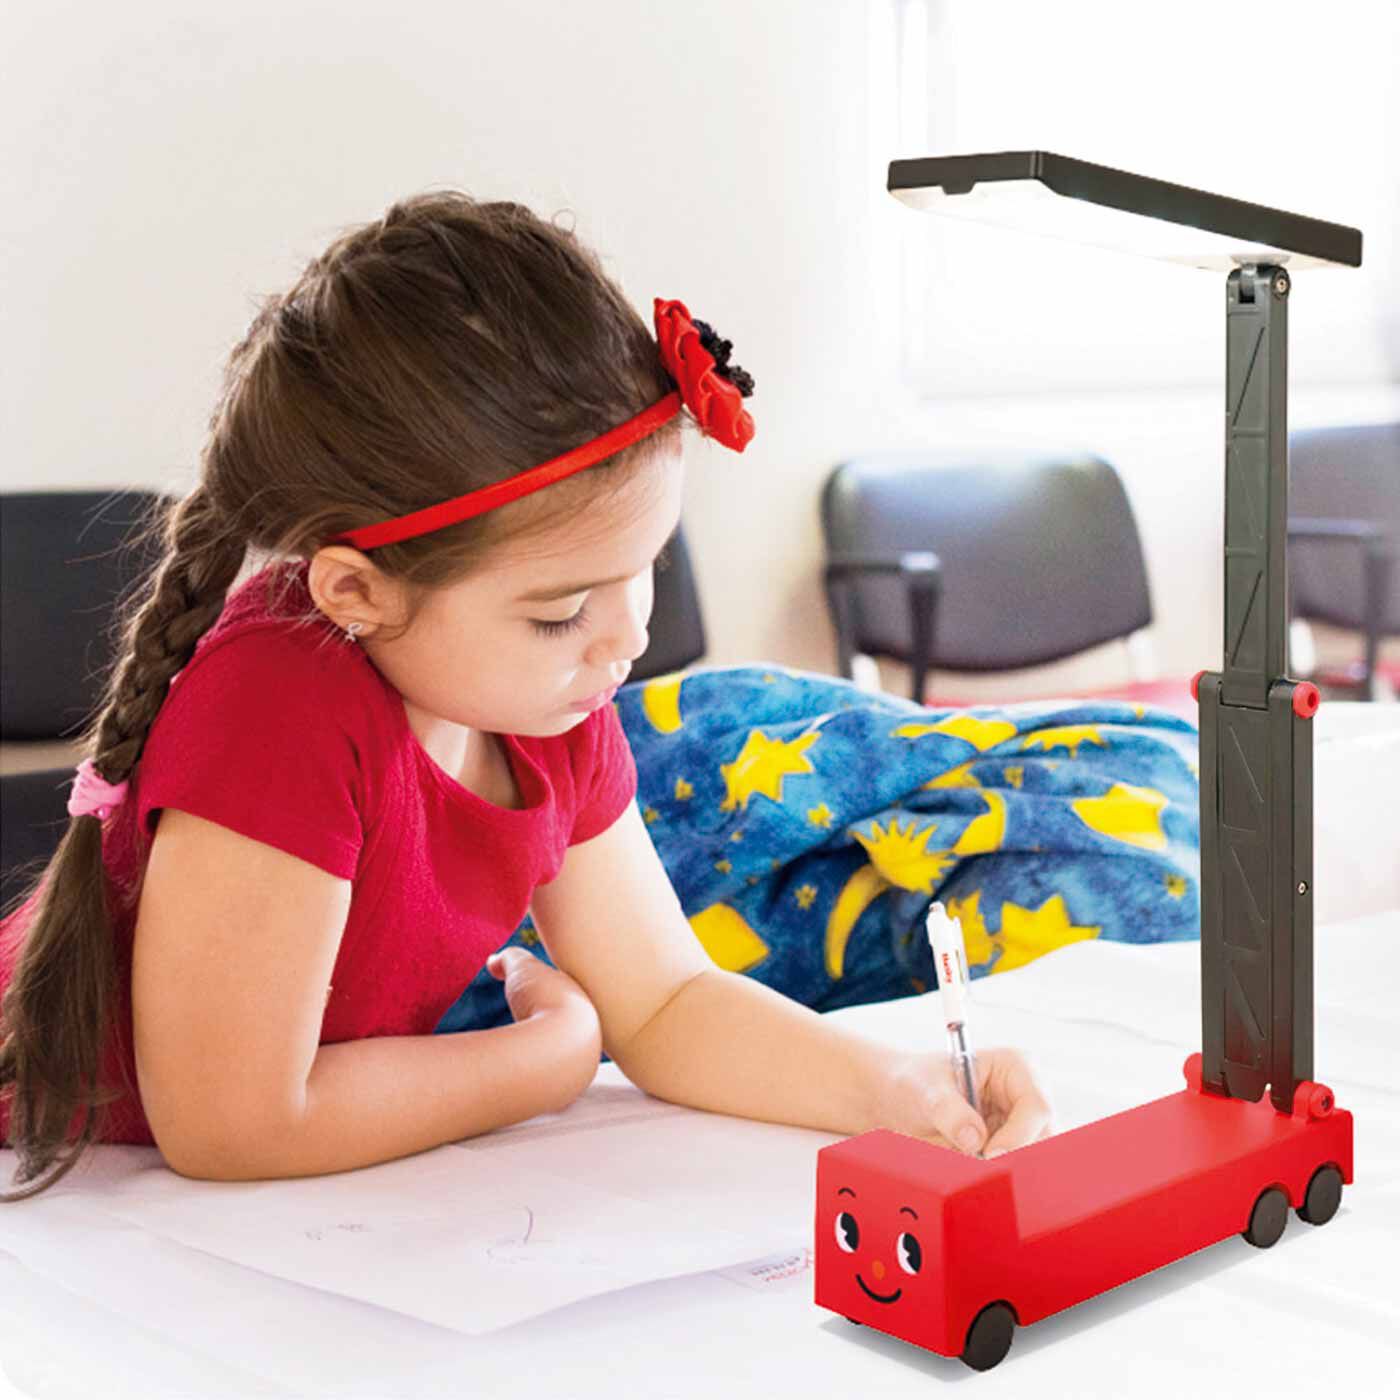 L'AMIPLUS|テーブルでもベッドサイドでも活躍持ち運べるLEDトラックライト|コードレスで好きな場所で使えるので、子ども部屋での学習やベッドサイドの読書灯にも。